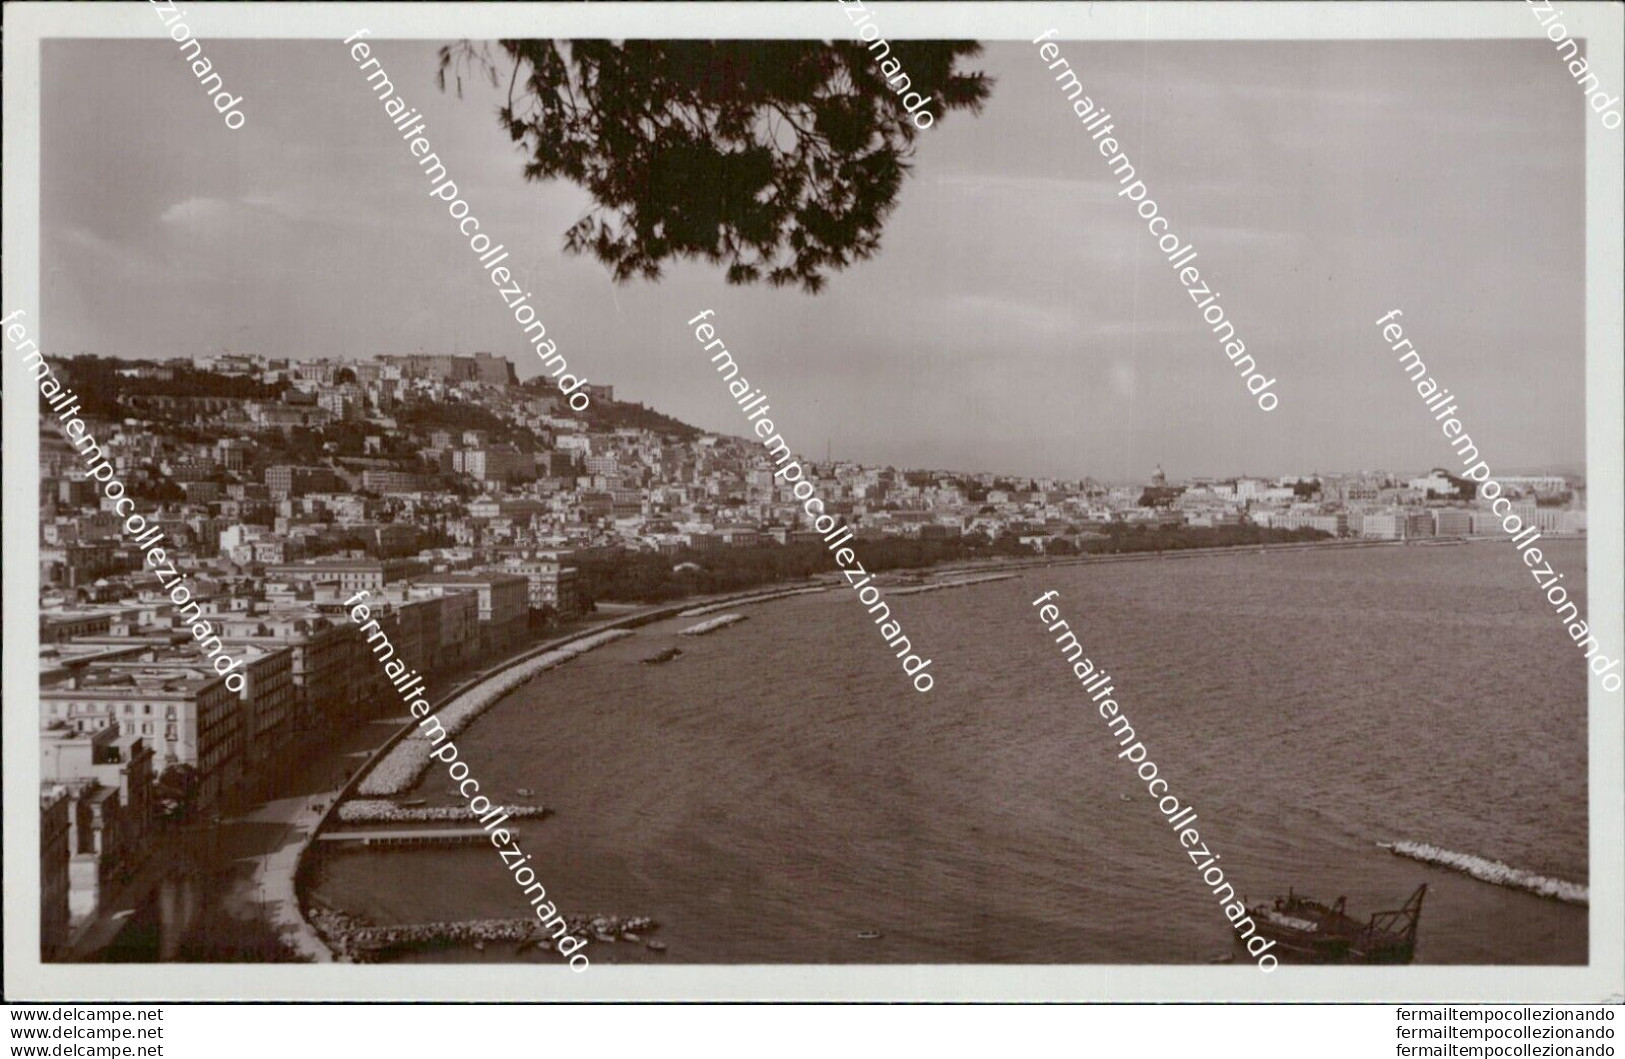 At531 Cartolina Napoli Citta' Posillipo Panorama Del Rione Sannazaro - Napoli (Naples)